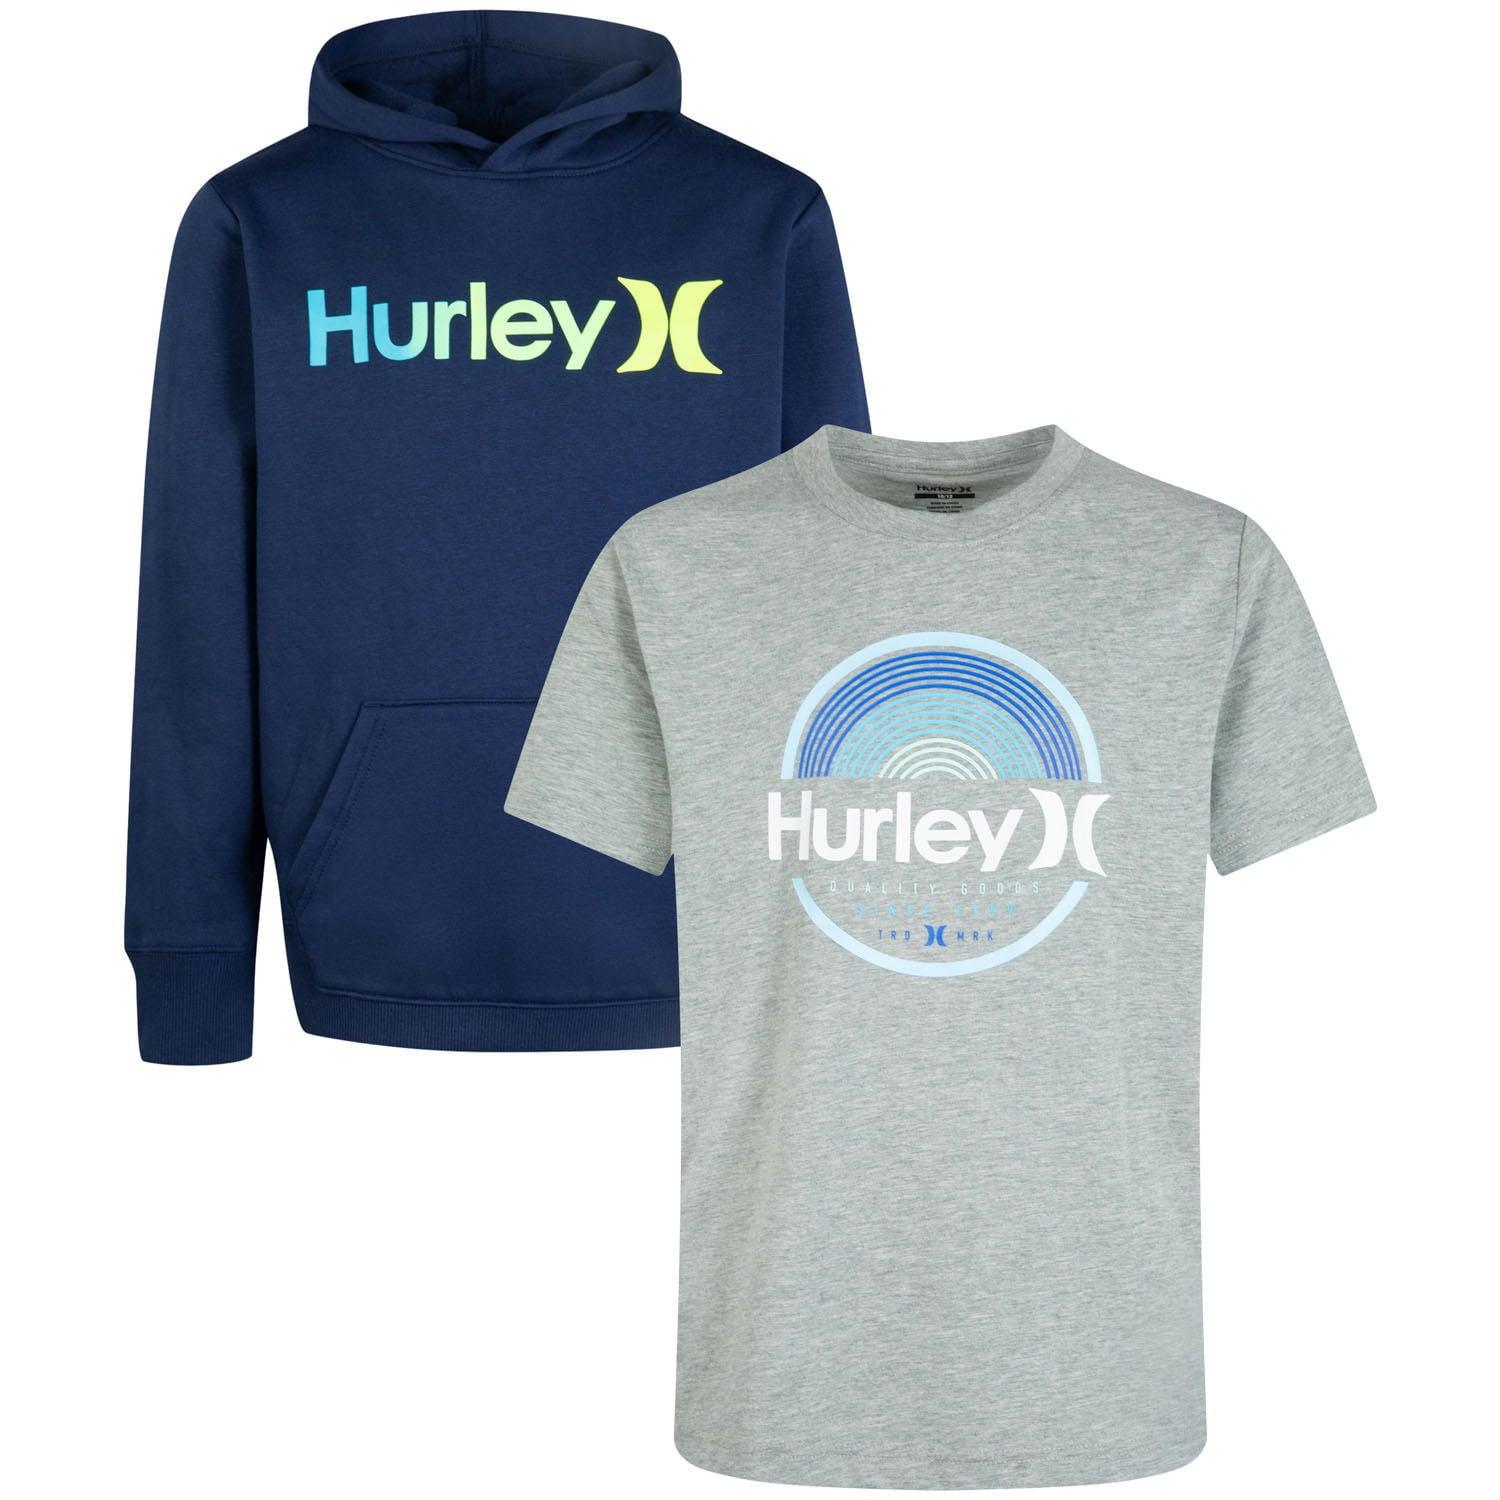 Hurley Boy's 2 Pack Hoodie & Tee Set (Navy/Grey) - Grovano